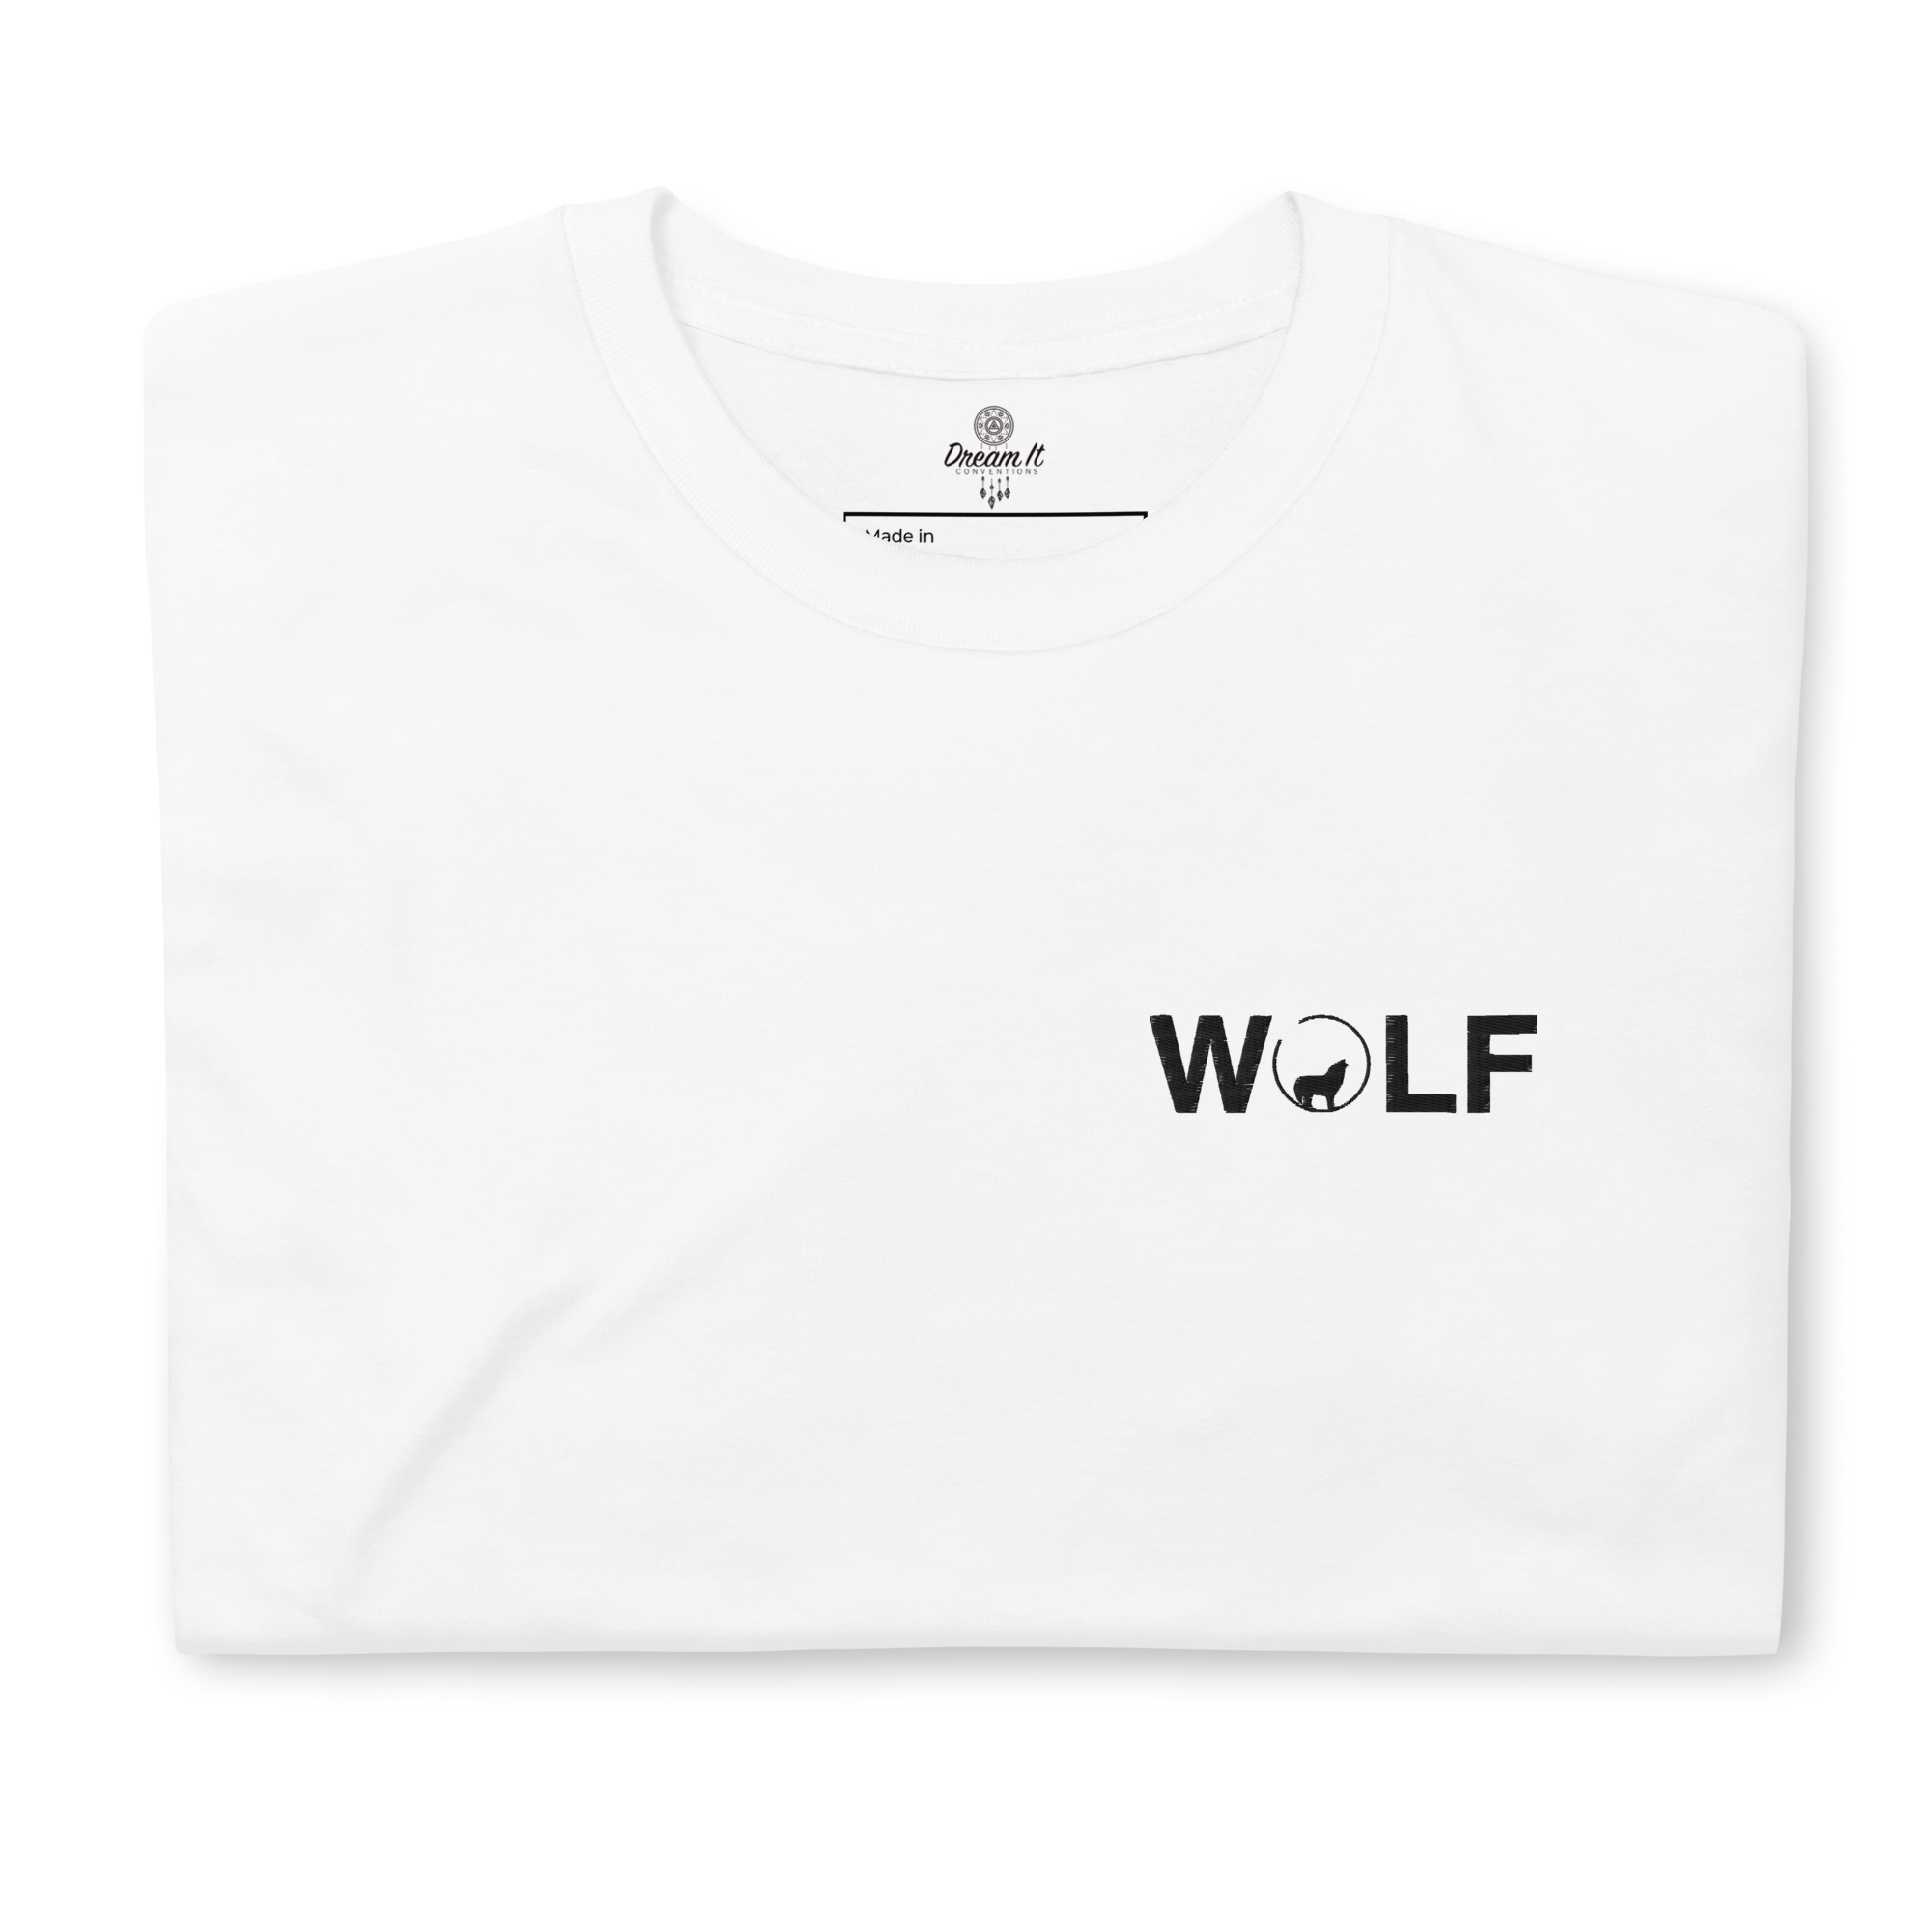 T-shirt brodé unisexe à manches courtes WOLF